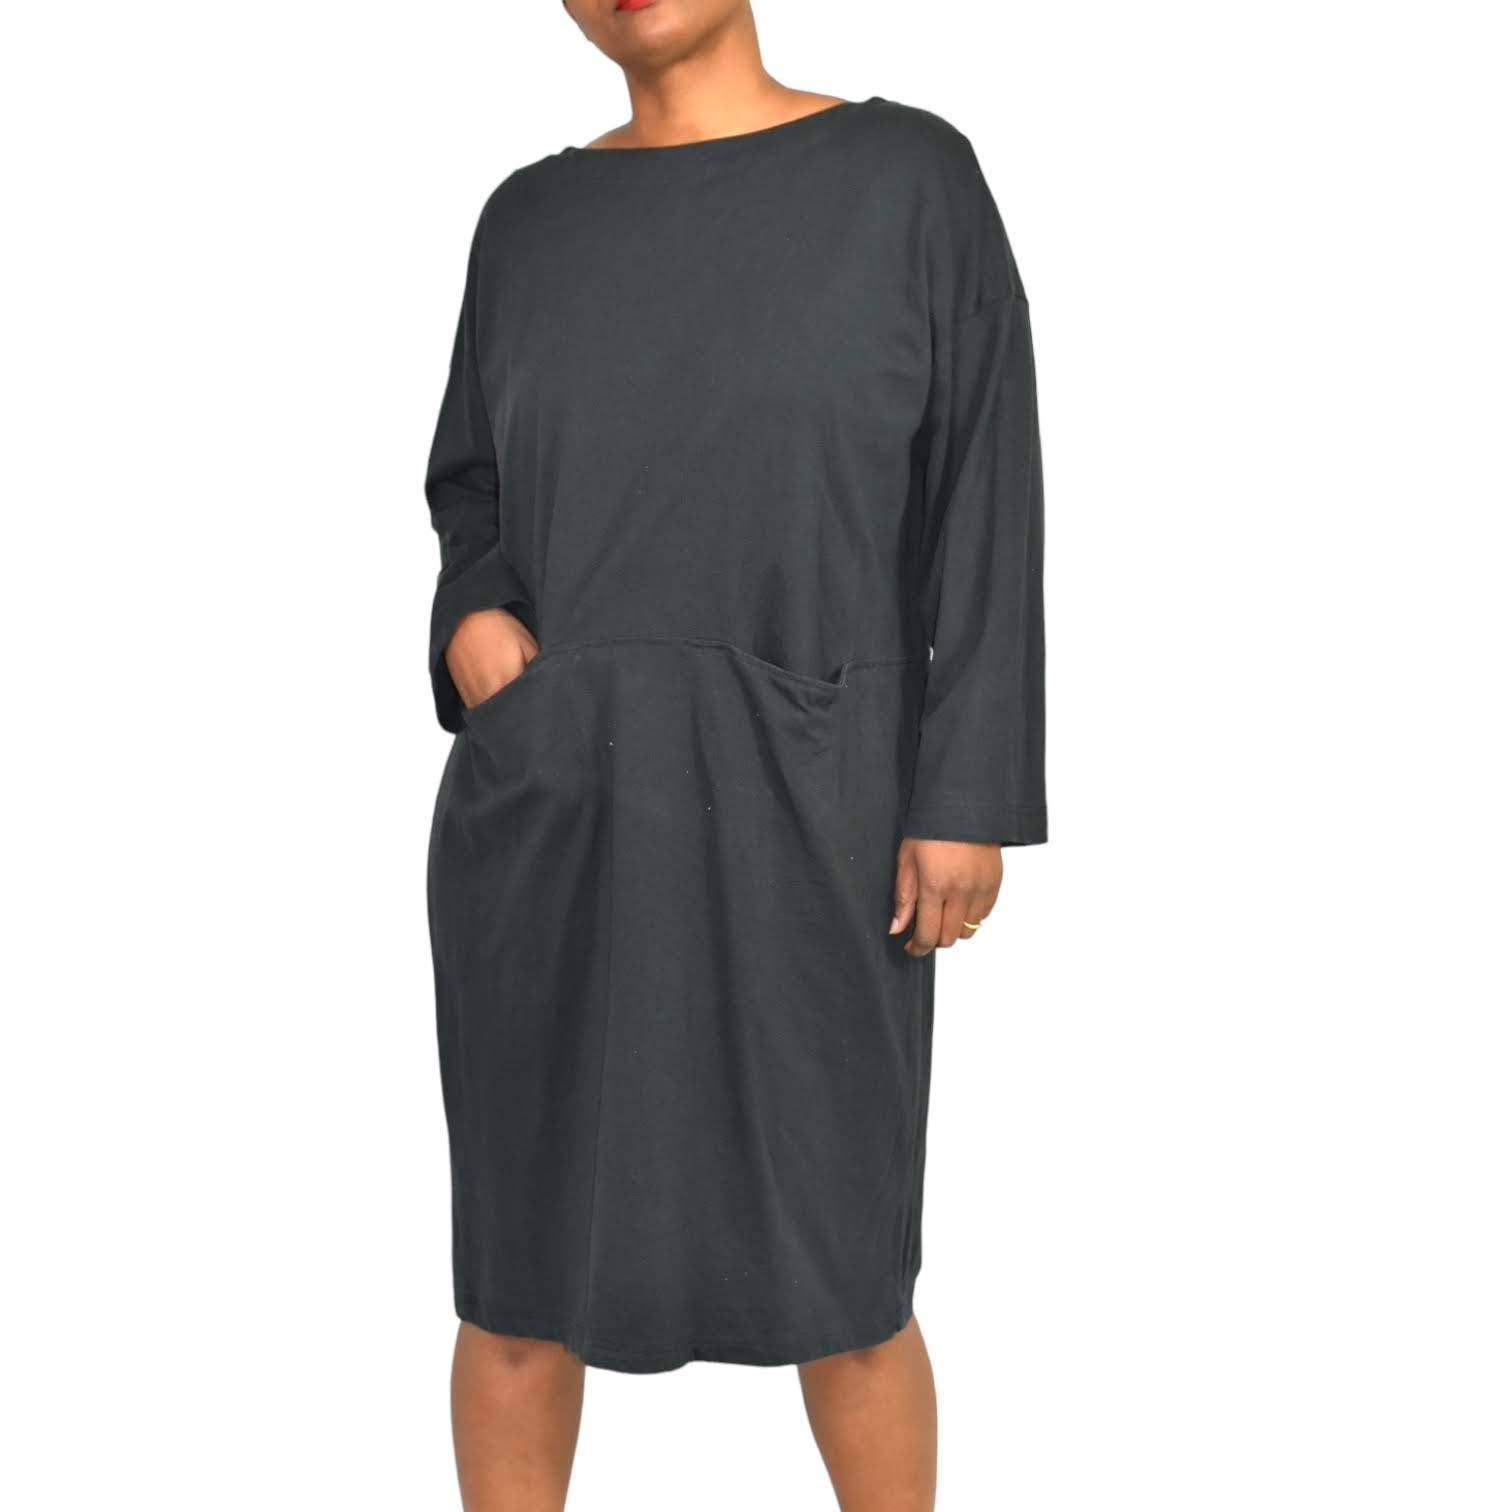 TOAST Tunic Dress Black Tent Sheath Oversized Fisherman Smock Pocket Size Medium